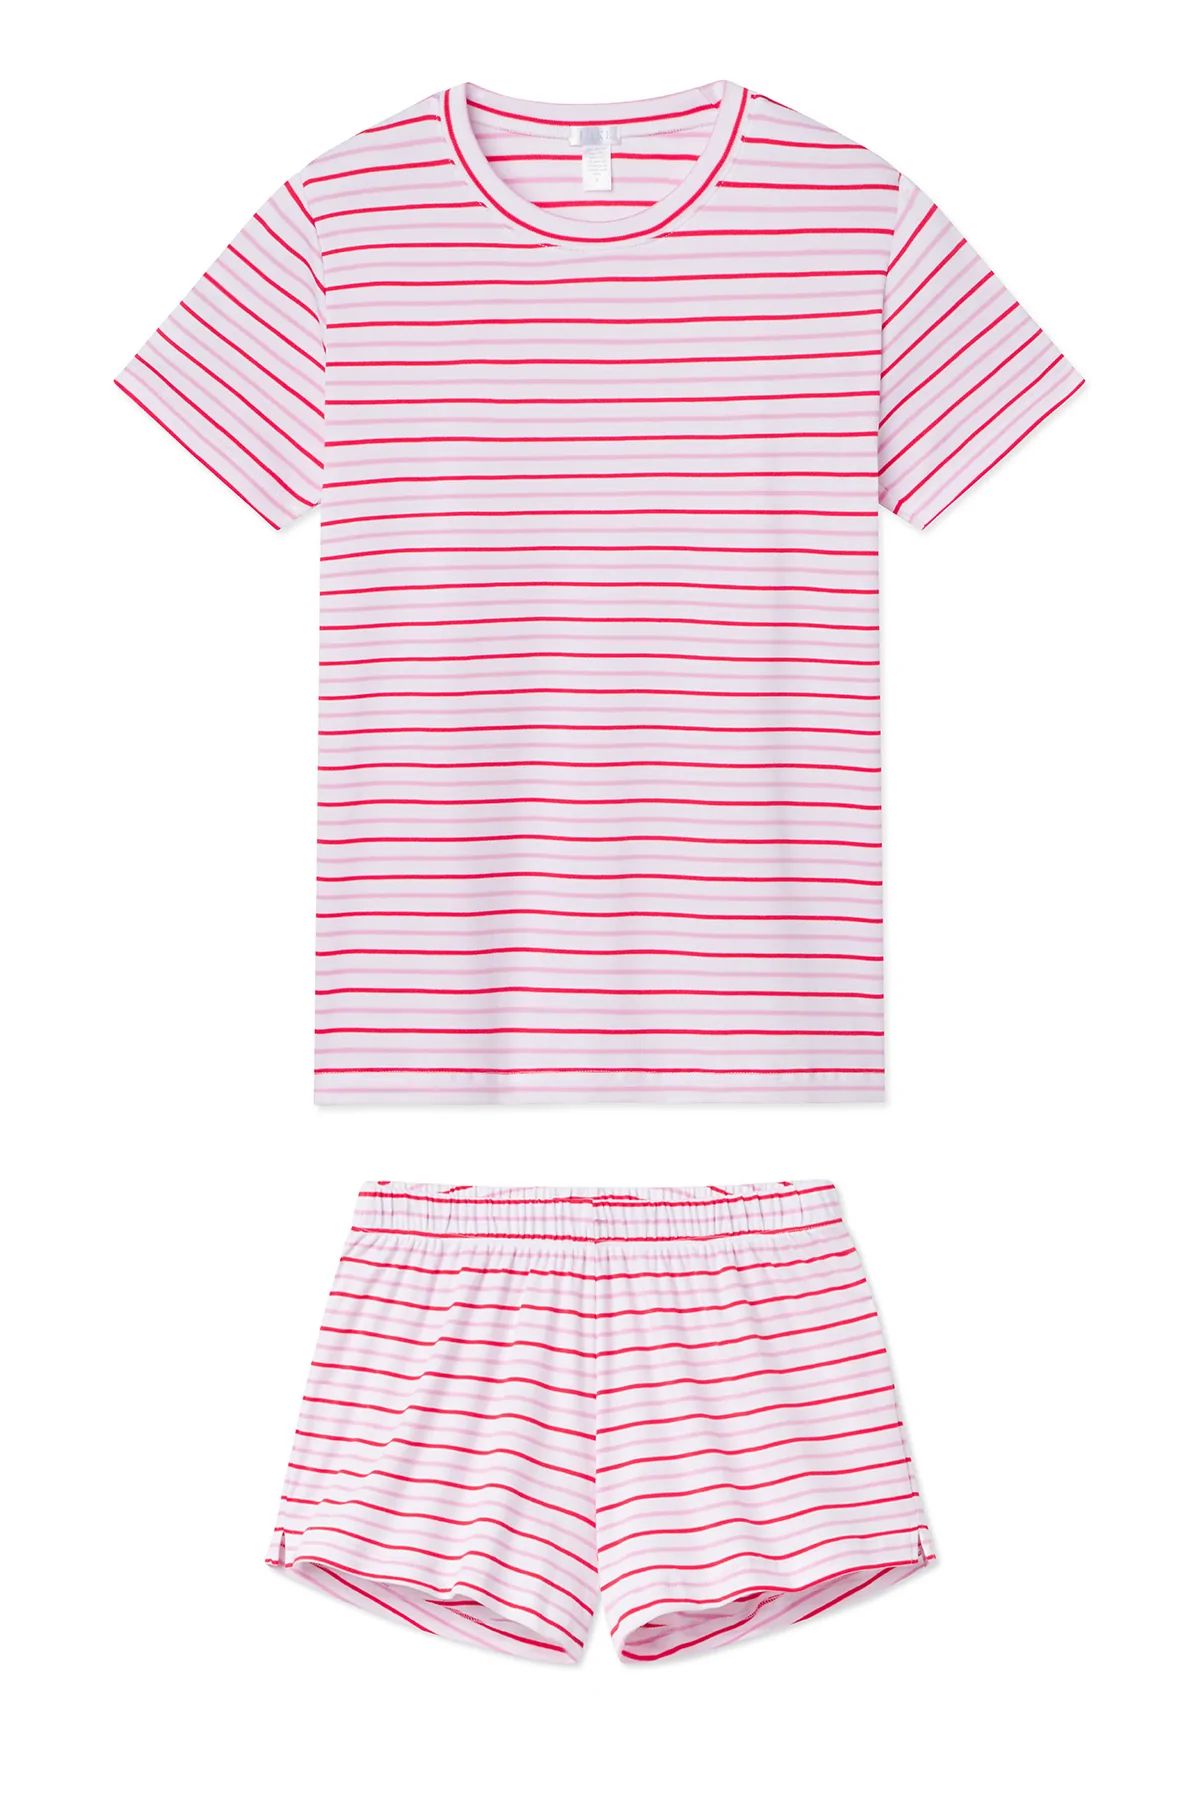 Pima Weekend Shorts Set in Candy | LAKE Pajamas